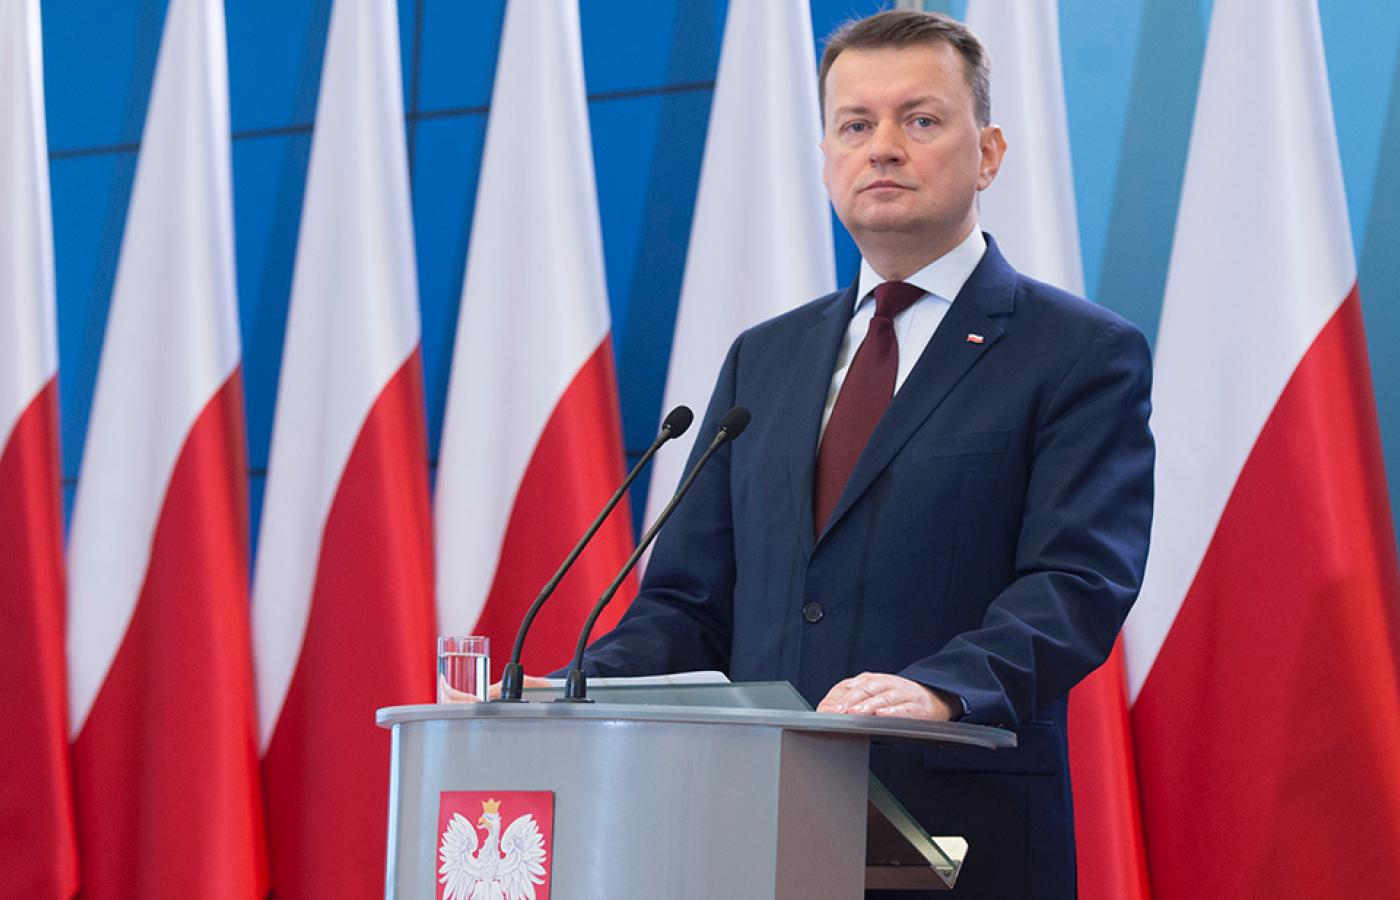 Minister Mariusz Błaszczak w charakterystyczny dla siebie sposób odniósł się do dotyczącej wydarzeń w Ełku decyzji rzecznika praw obywatelskich.